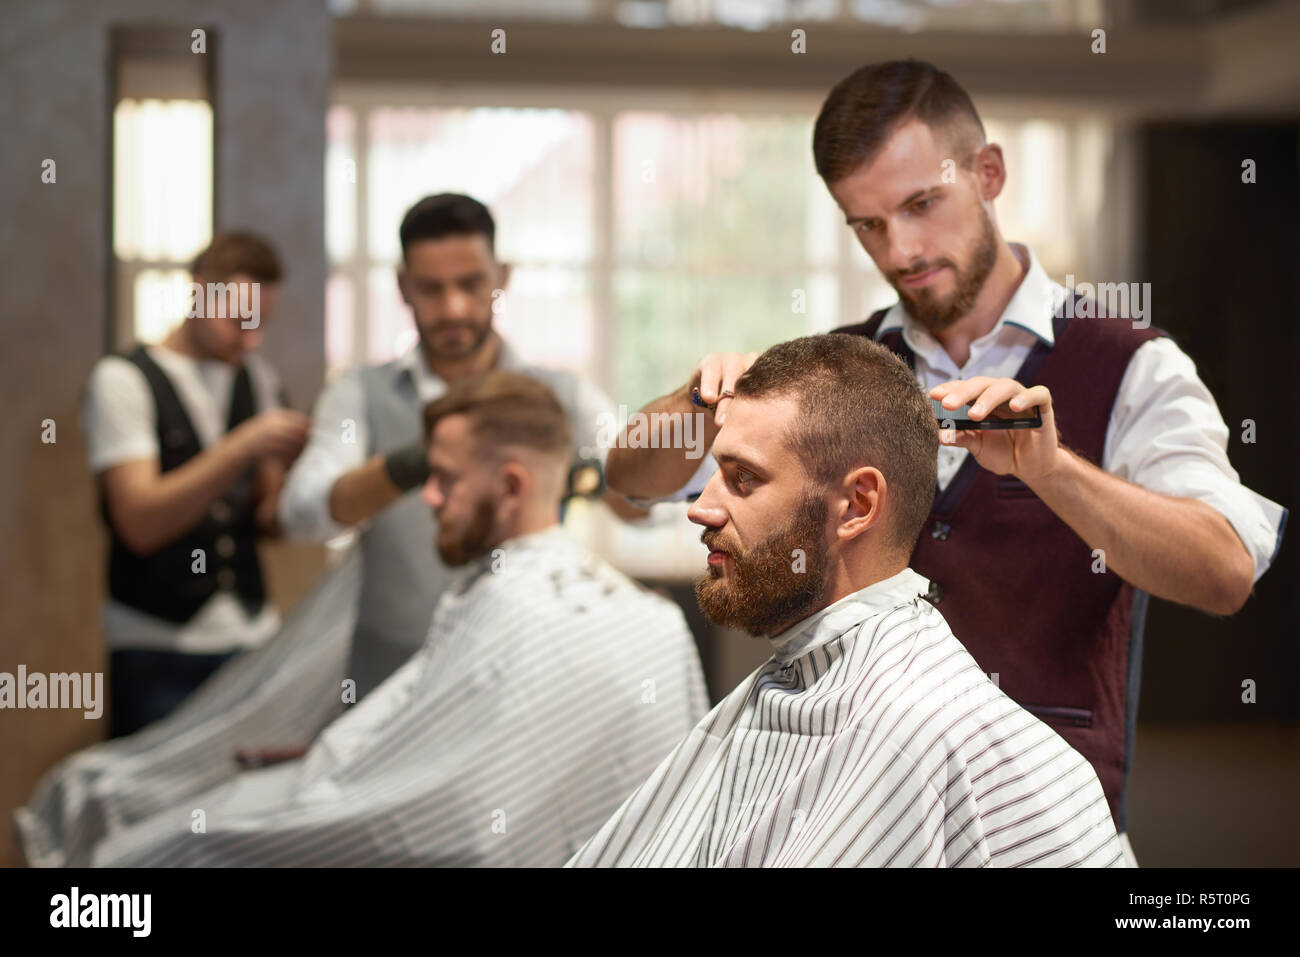 Seitenansicht des Prozesses der Hairstyling in Friseur. Junge Bartgeier im Stuhl sitzen, im Spiegel zu betrachten und sich die Haare schneiden. Professionelle Friseur in Uniform, Schere und Rasiermesser. Stockfoto